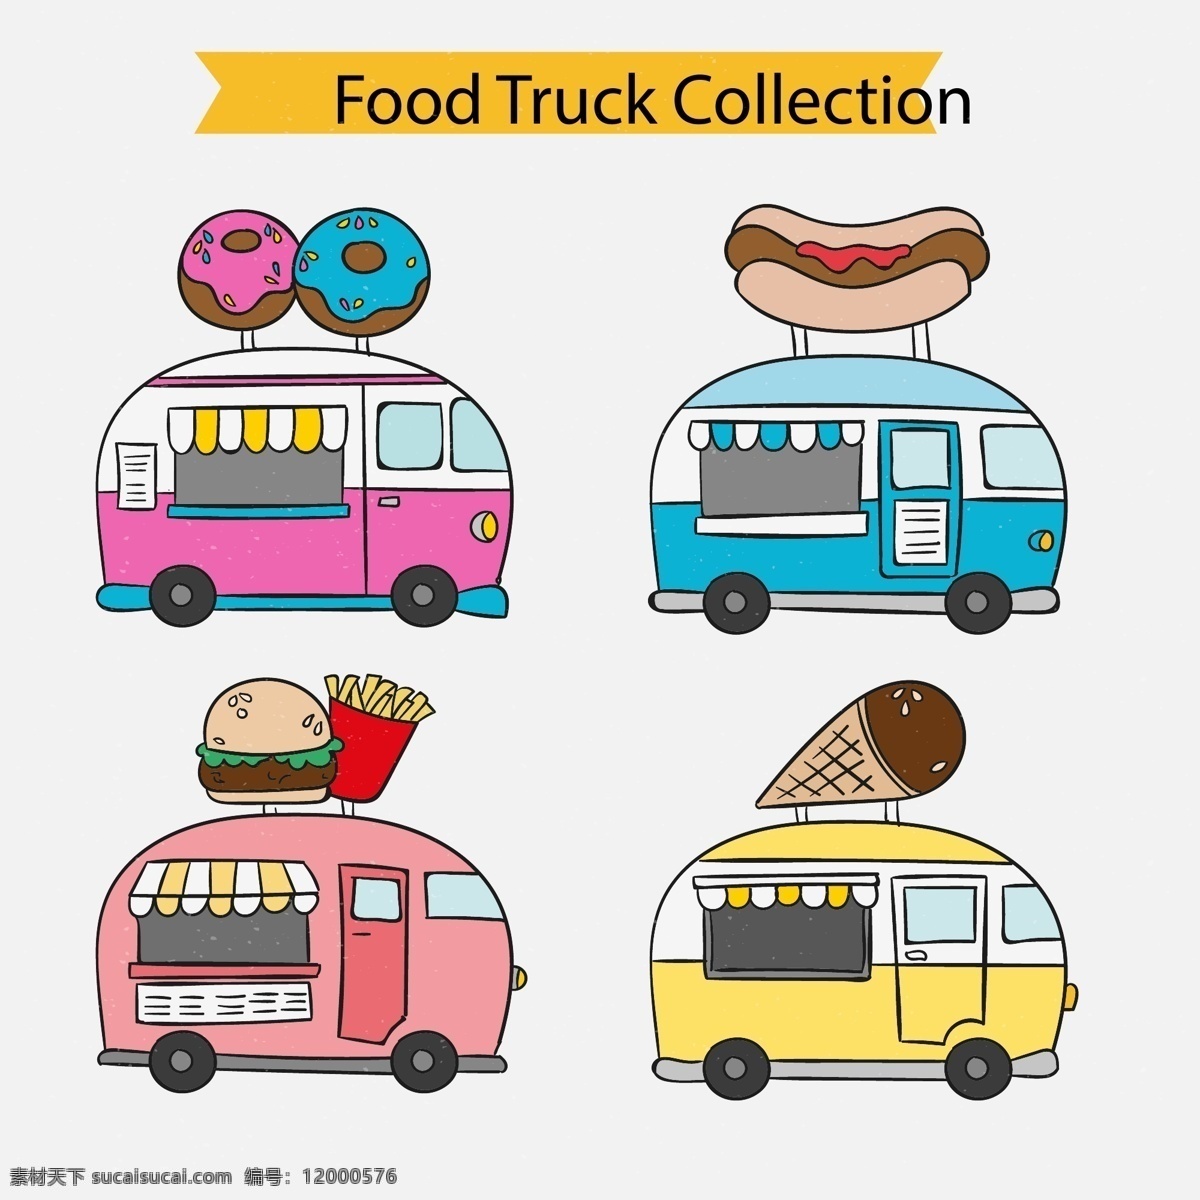 卡通 可爱 食品 卡车 收集 插画 美食 薯条 热狗